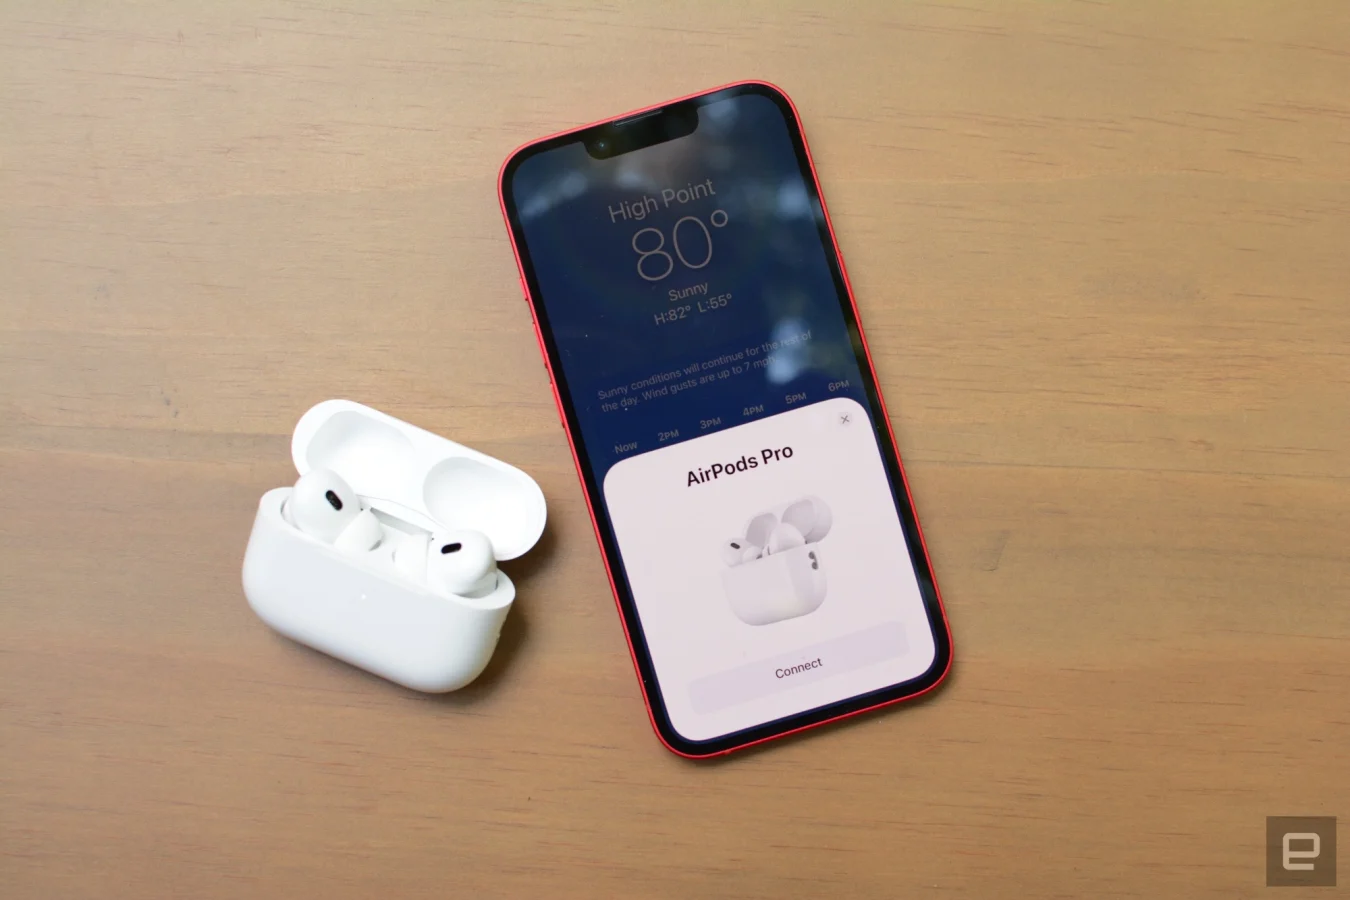 Несмотря на неизменный дизайн, Apple добавила в новые AirPods Pro множество обновлений.  Здесь также присутствуют все удобства модели 2019 года, а также такие дополнения, как Adaptive Transparency, Personalized Spatial Audio и новый сенсорный жест.  Есть возможность еще больше усовершенствовать знакомую формулу, но Apple дала владельцам iPhone несколько причин для обновления.